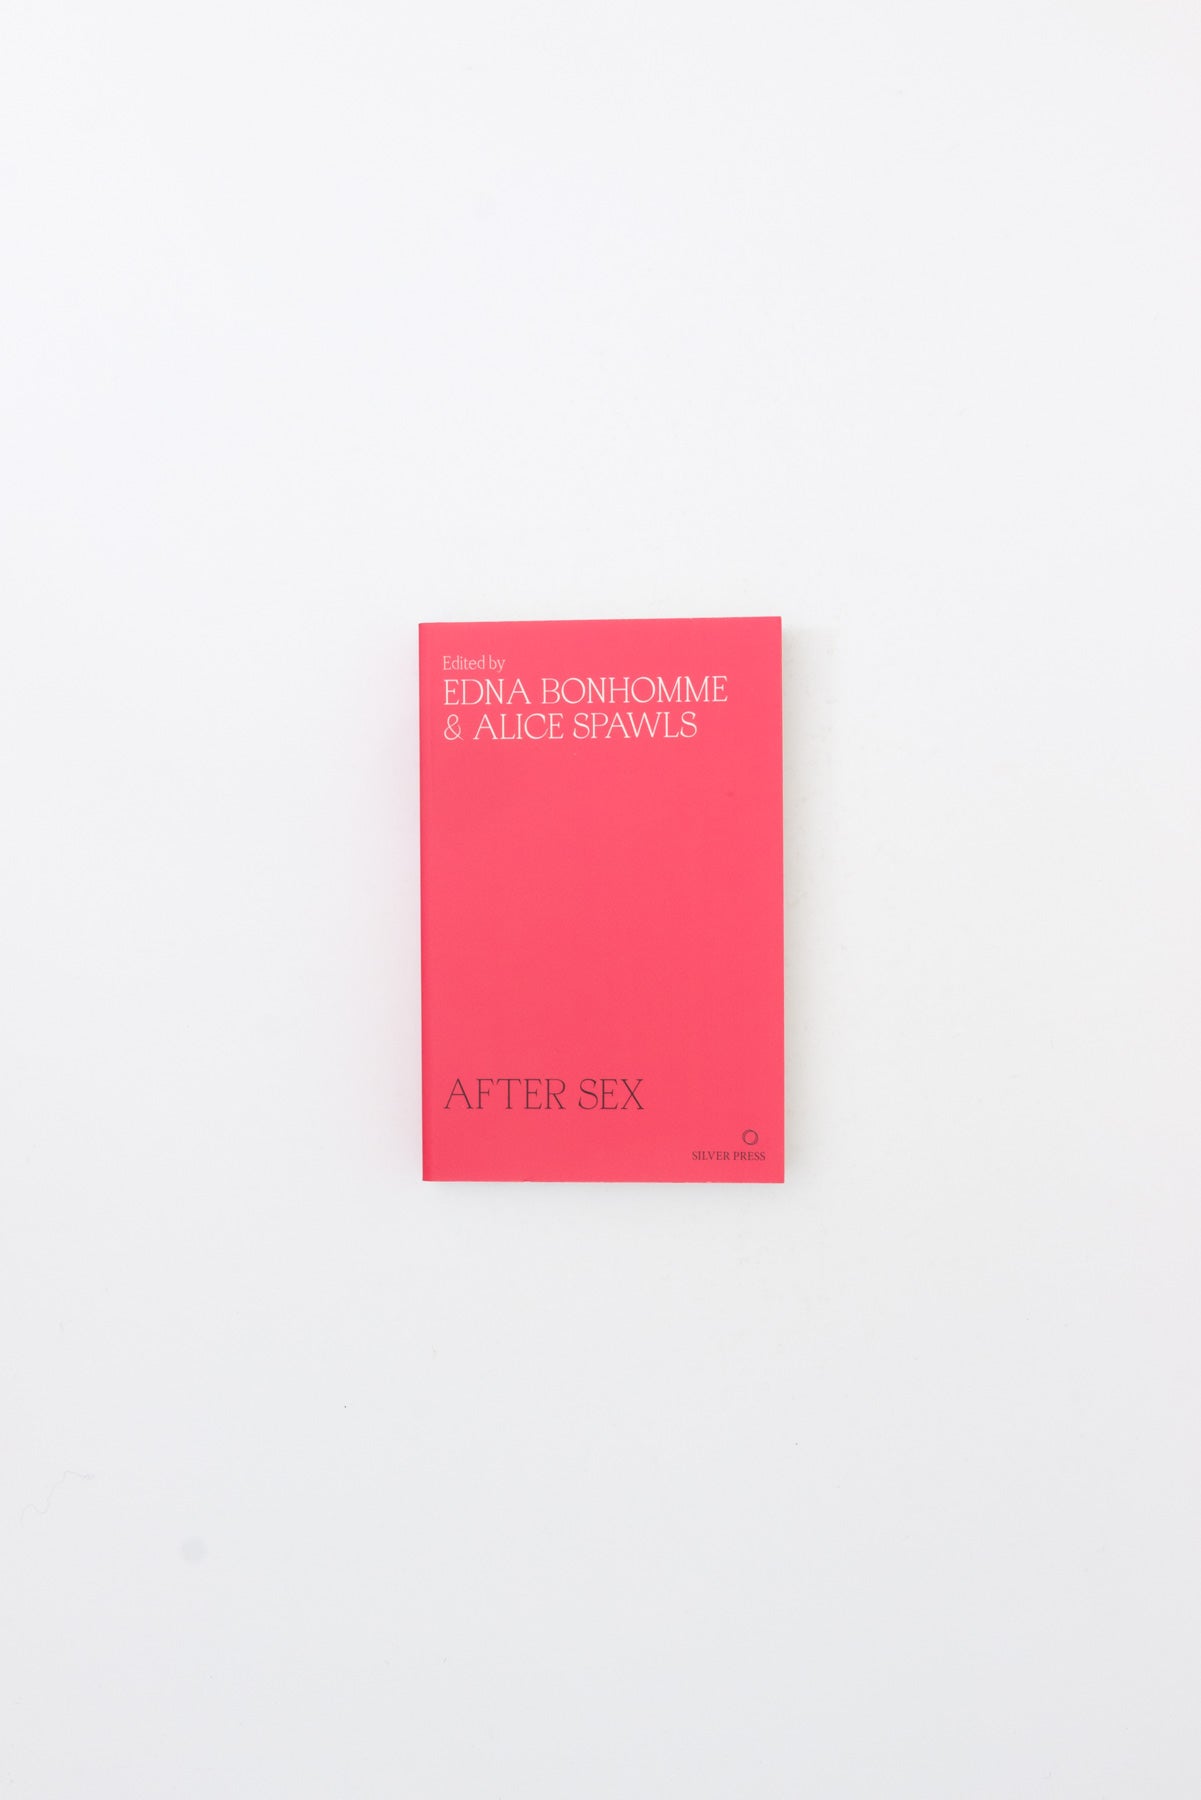 After Sex. - Edna Bonhomme & Alice Spawls